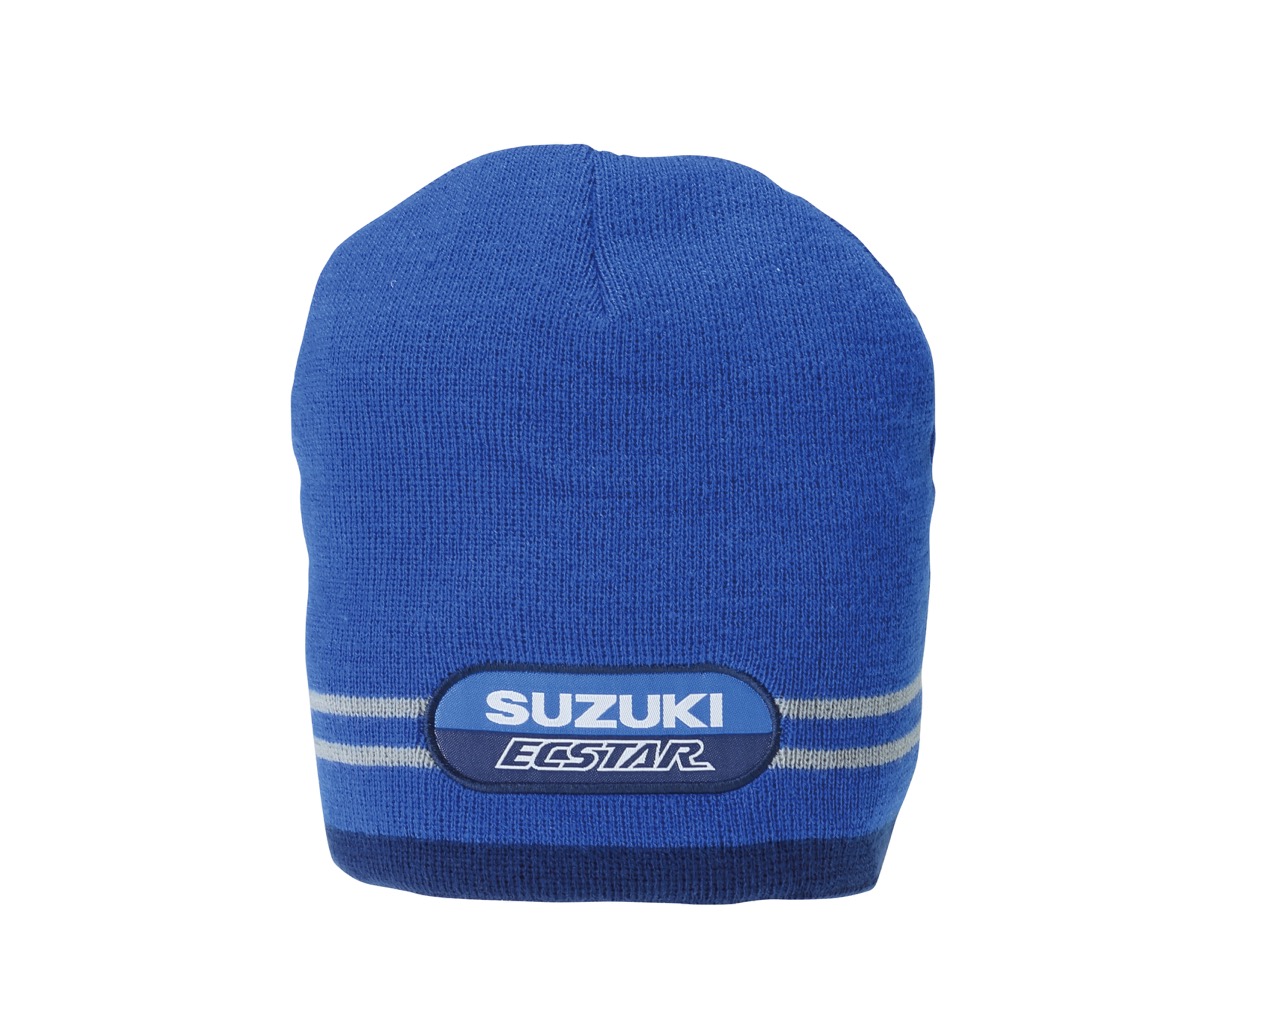 Suzuki - collezioni abbigliamento e accessori 